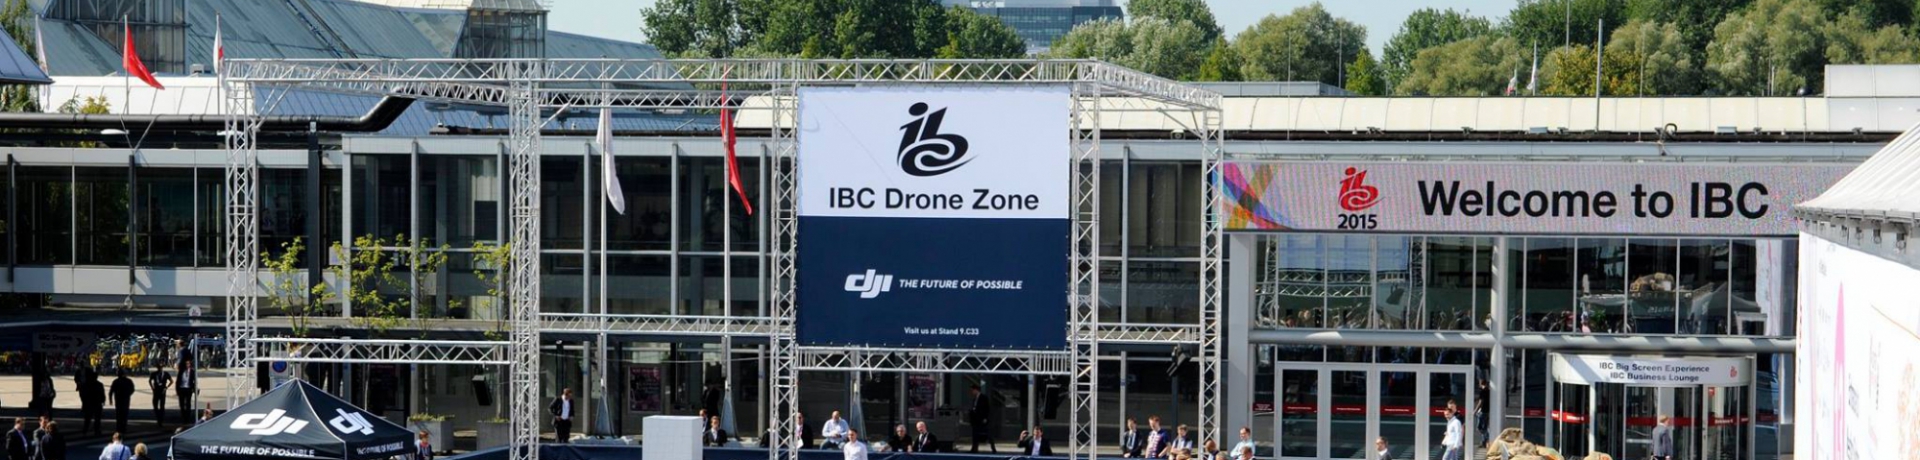 Drone Zone IBC 2015